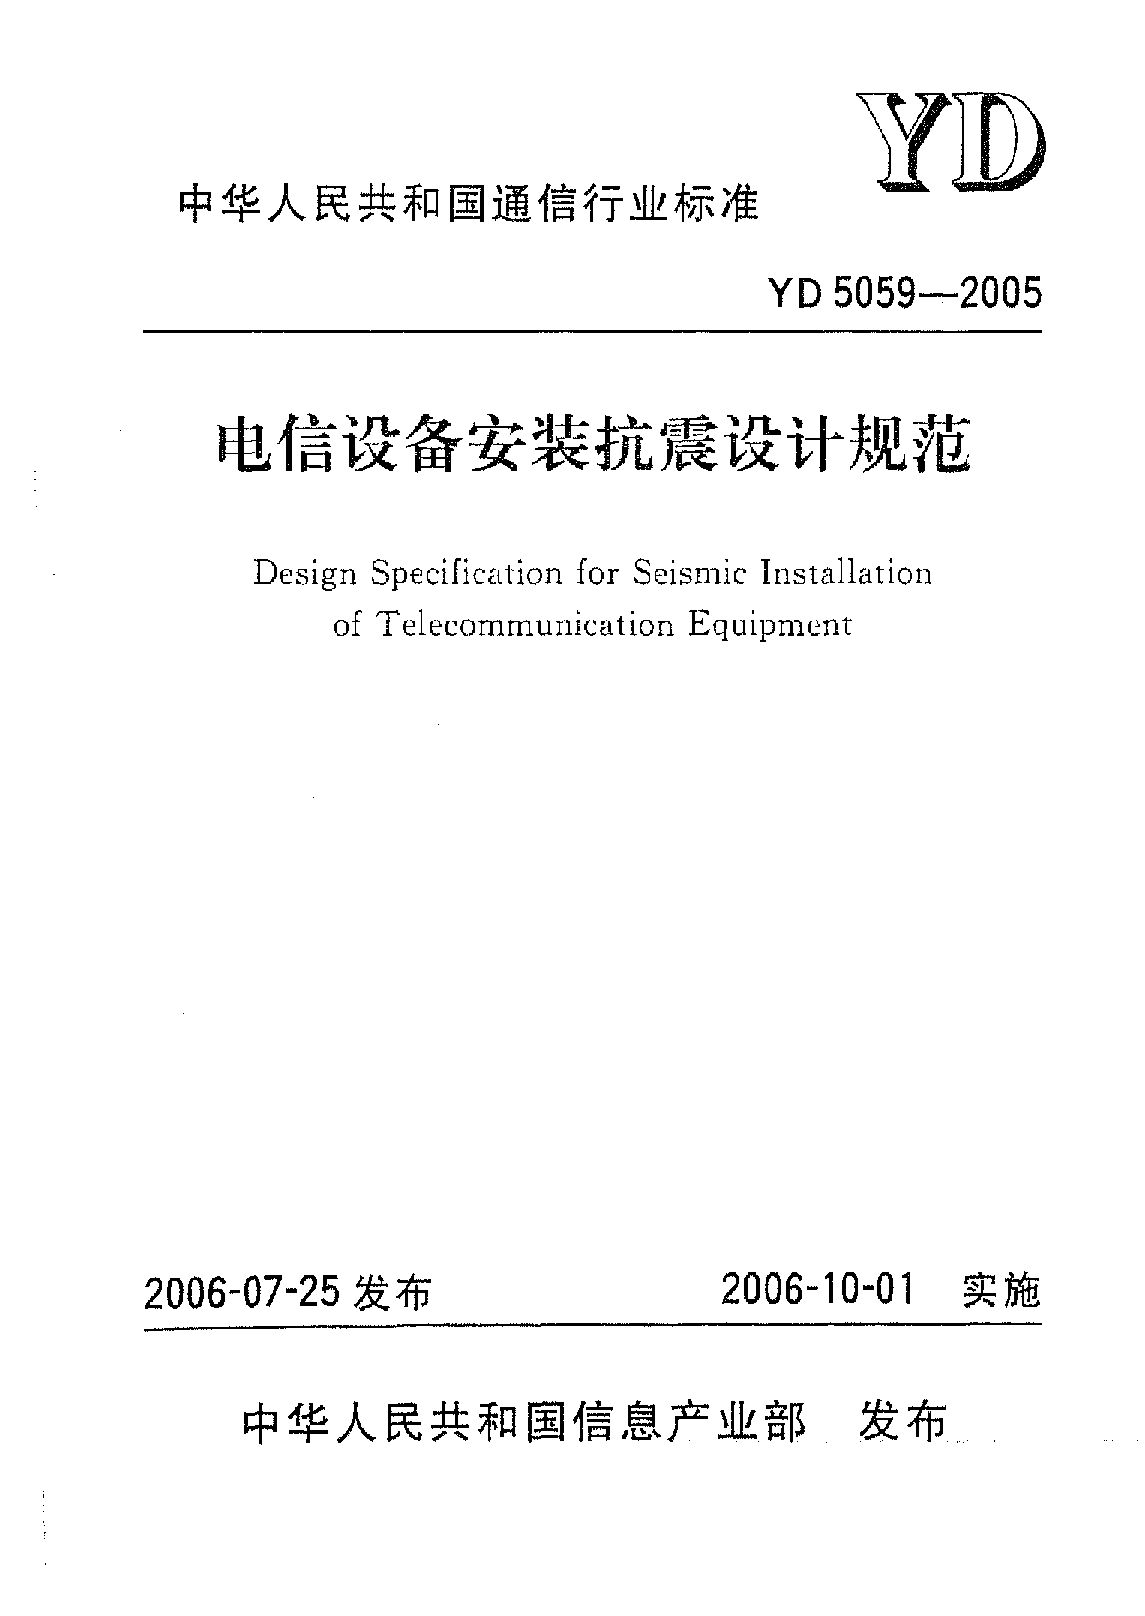 YD 5059-2005